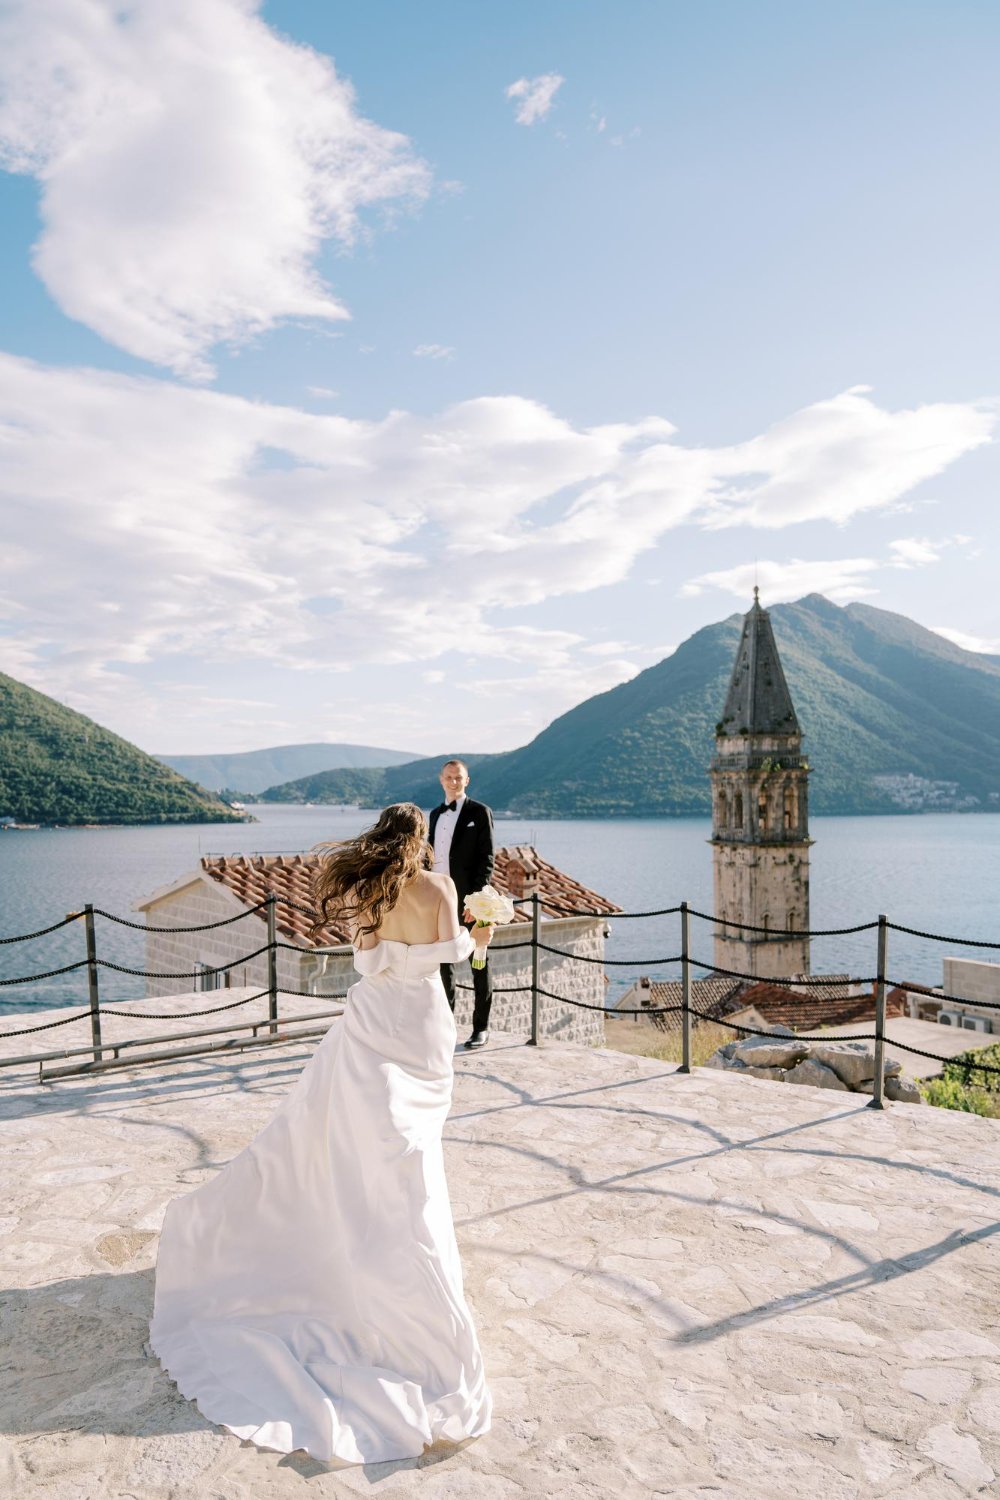 Bride runs to groom along the observation deck overlooking the belfry perast montenegro